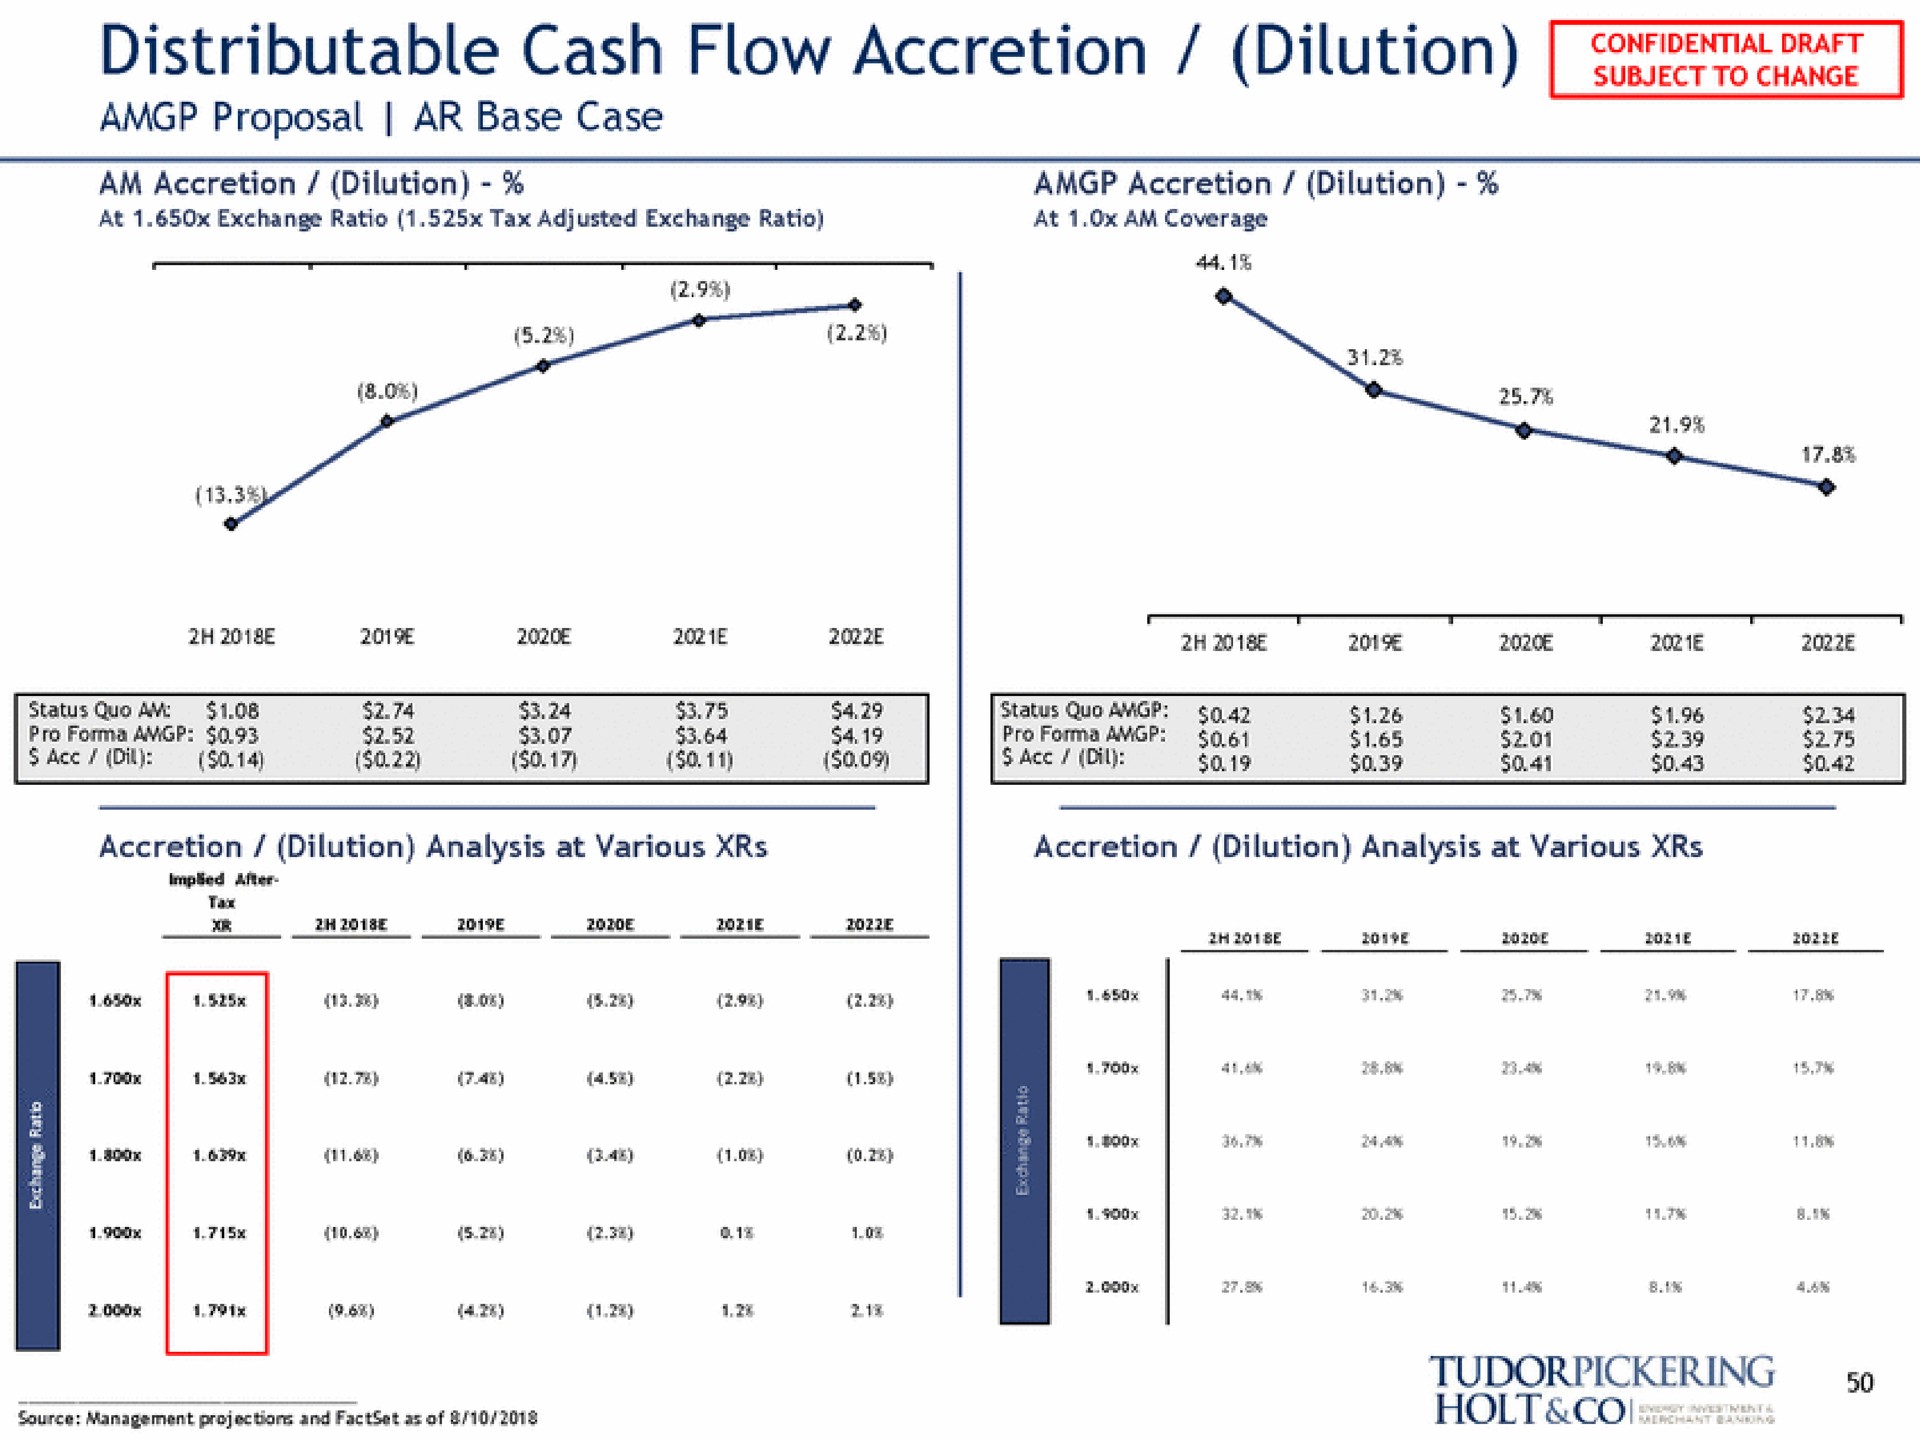 distributable cash flow accretion dilution | Tudor, Pickering, Holt & Co